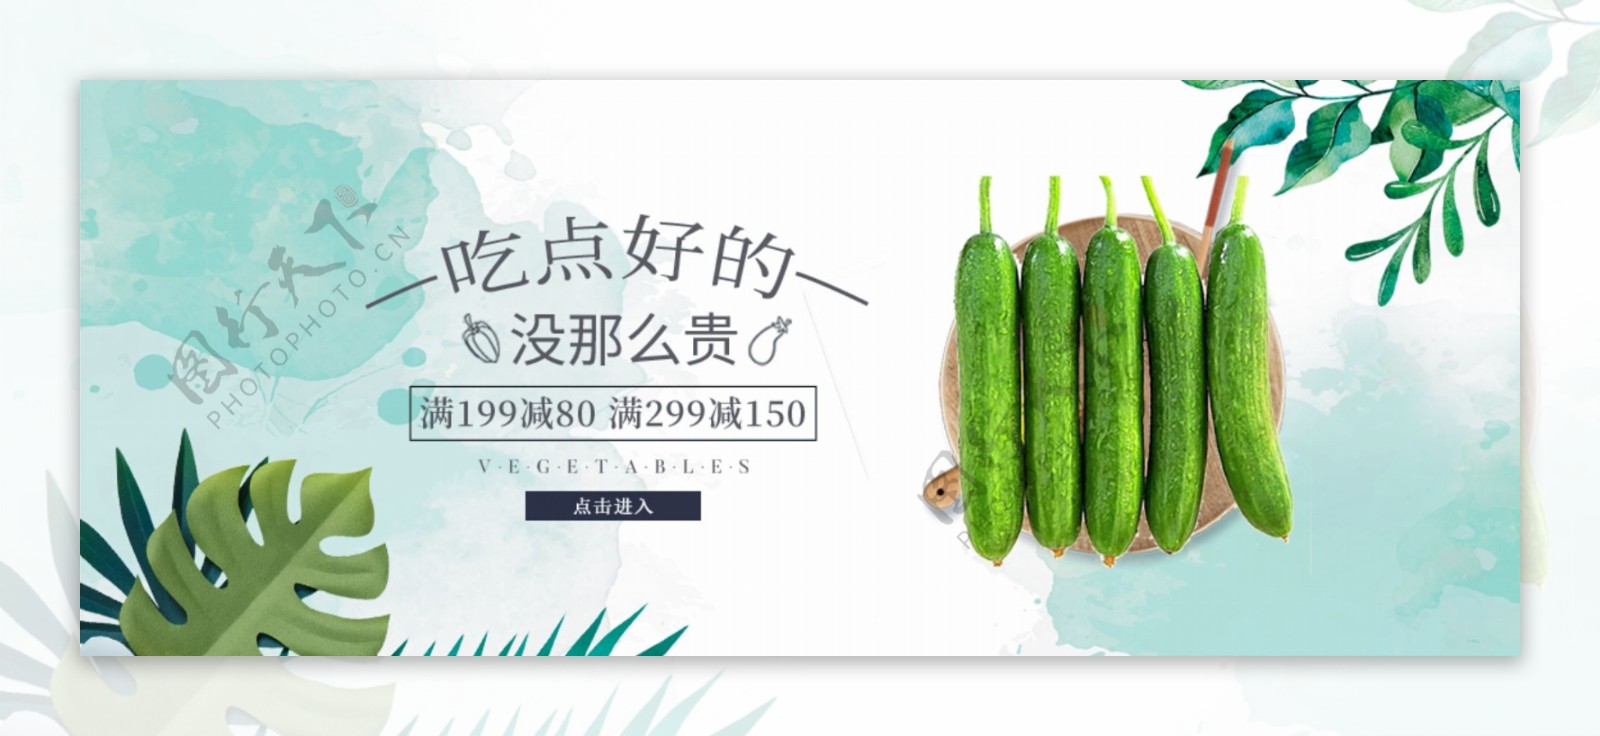 蔬菜淘宝天猫网页banner